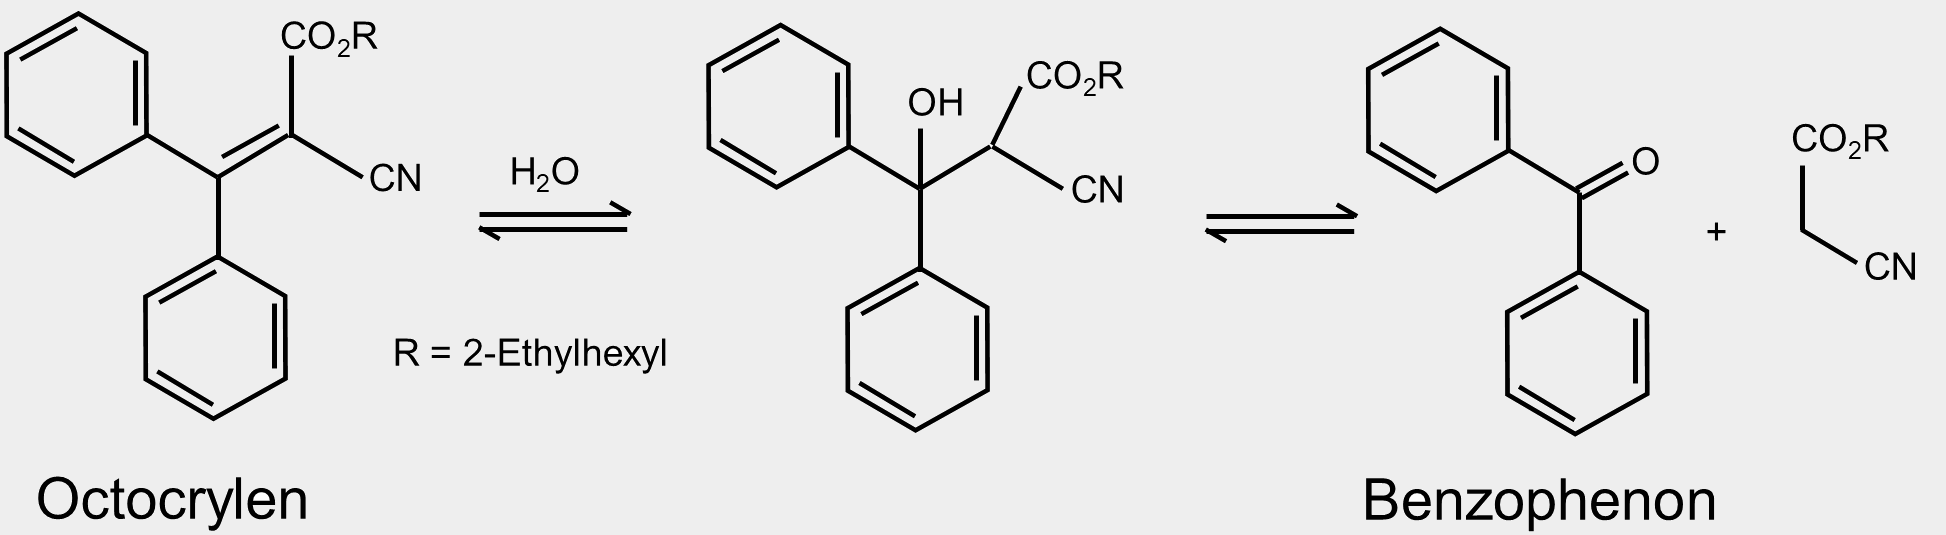 Das Bild zeigt die chemische Gleichung zum Abbau von Octocrylen zu Benzophenon